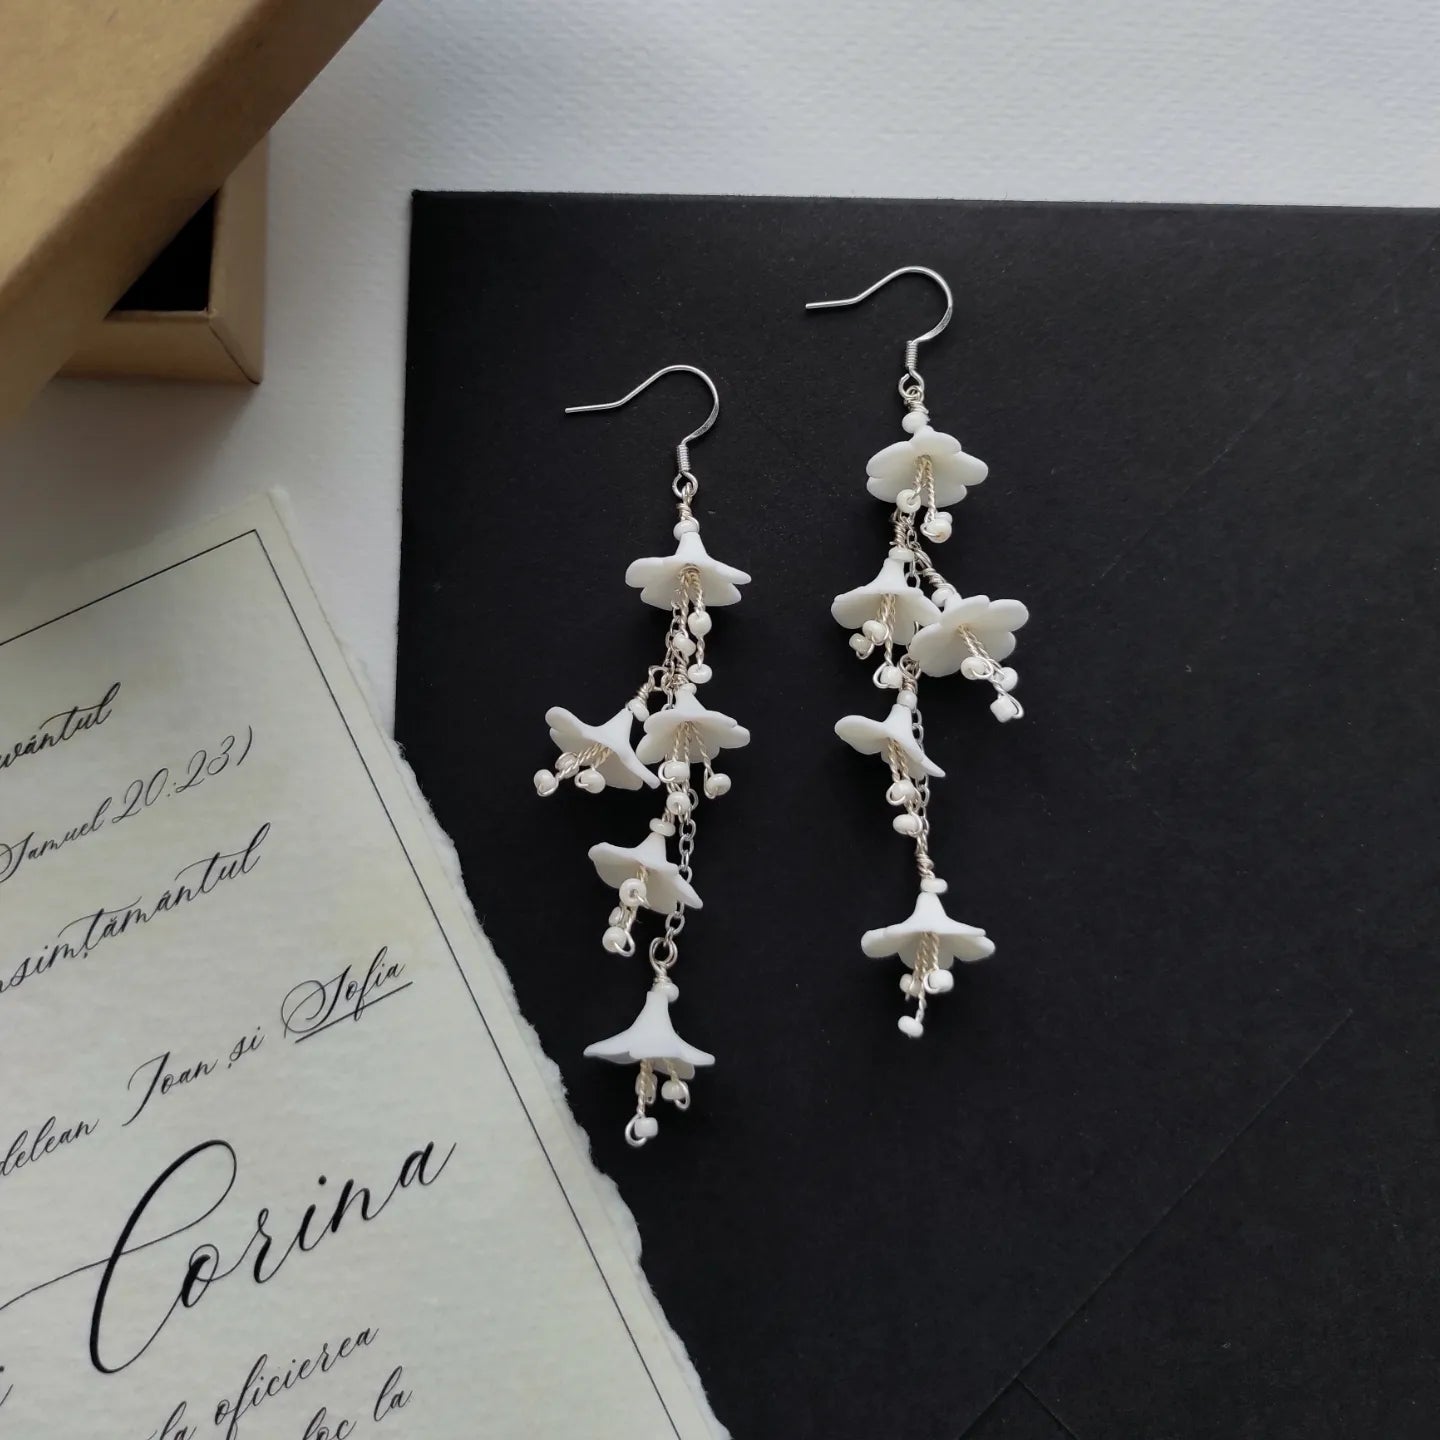 WEDDING BELLS - Flower drop earrings / Wedding jewelry / Bridal earrings / Special occasion jewelry